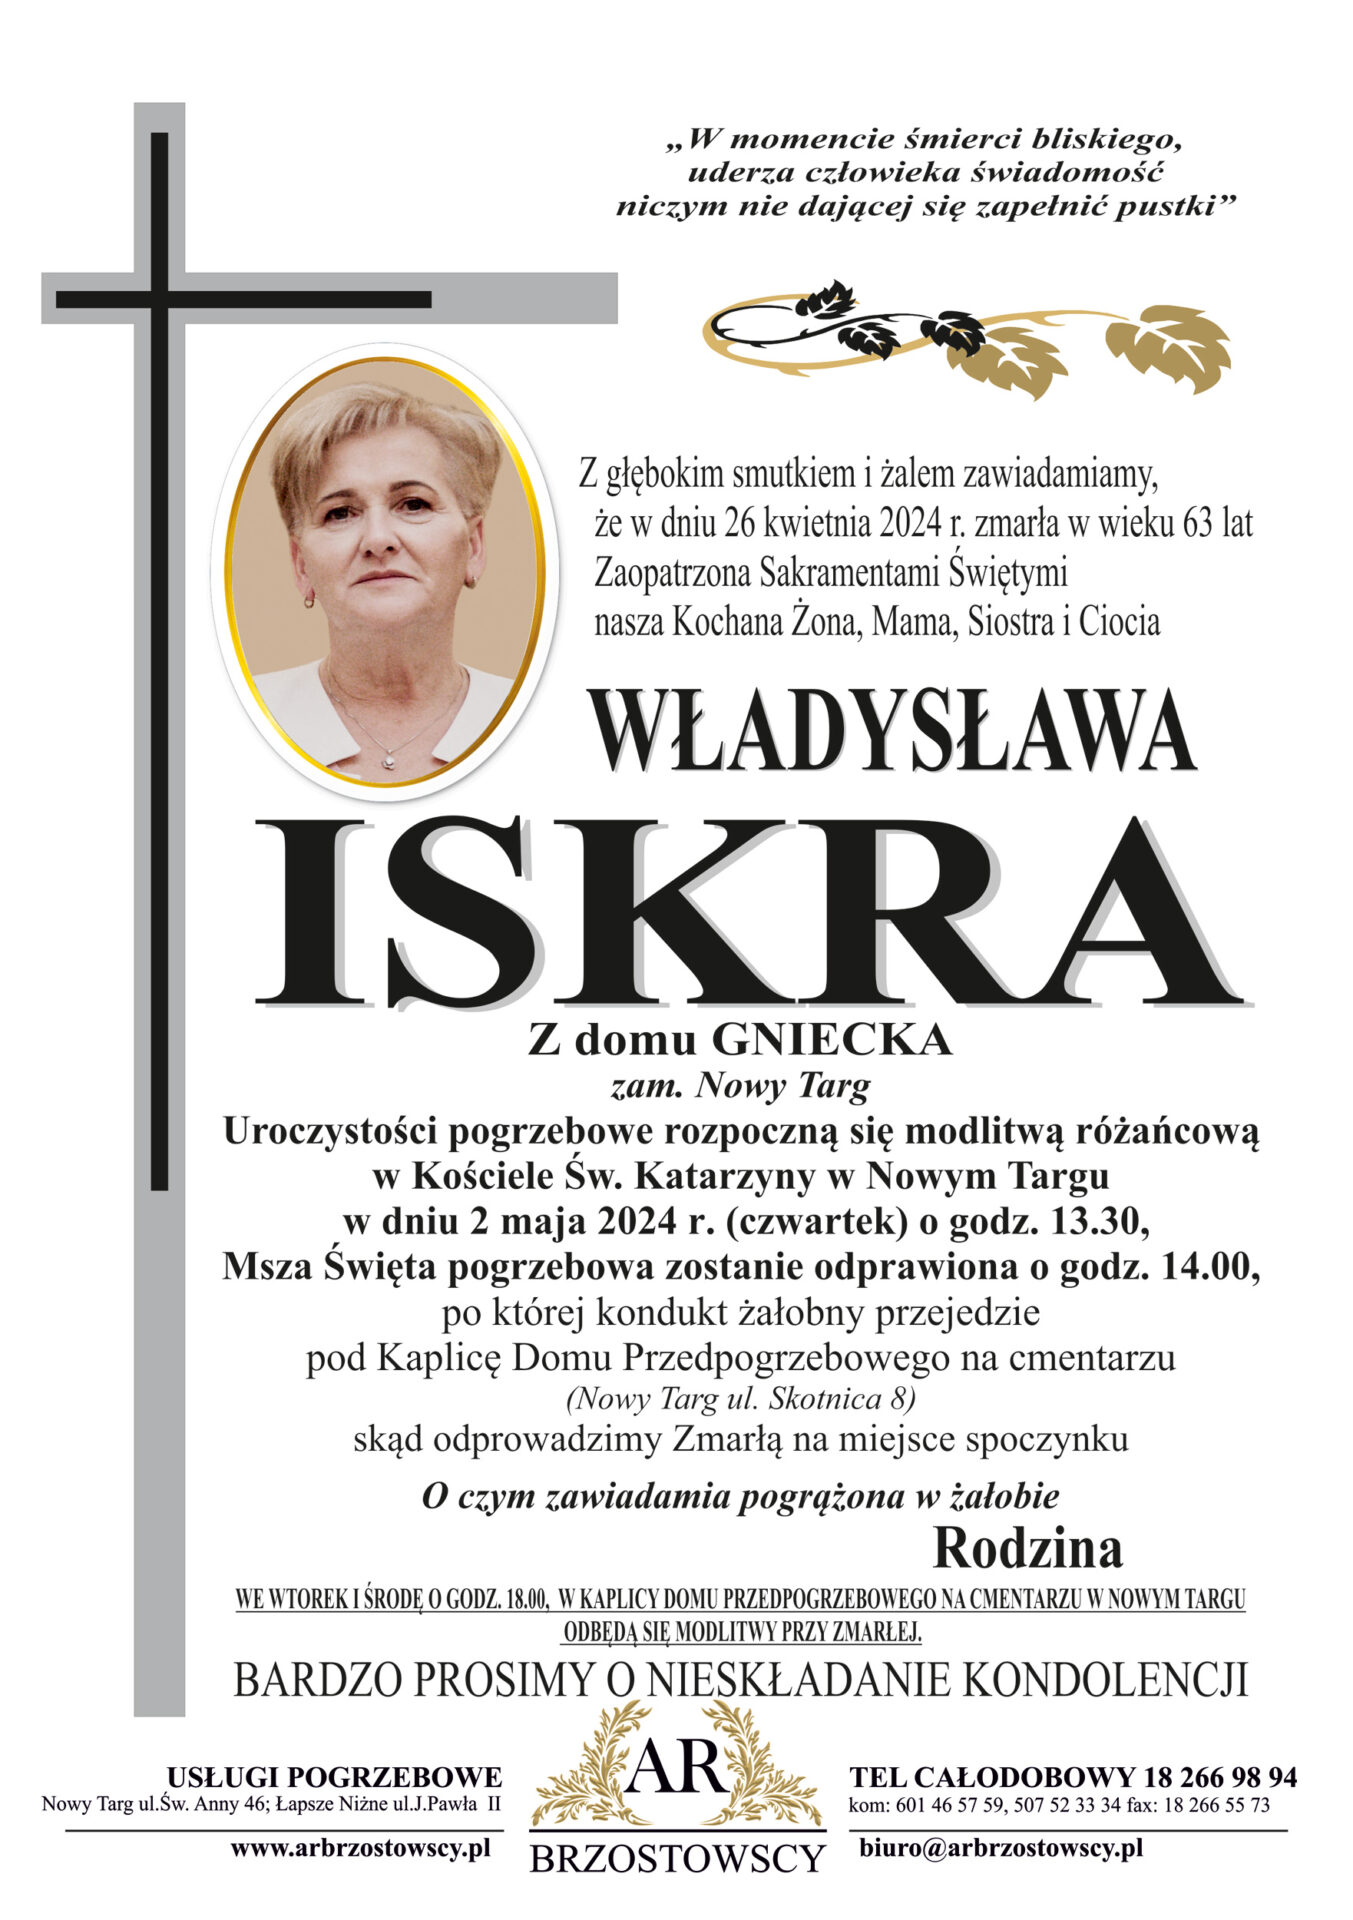 Władysława Iskra